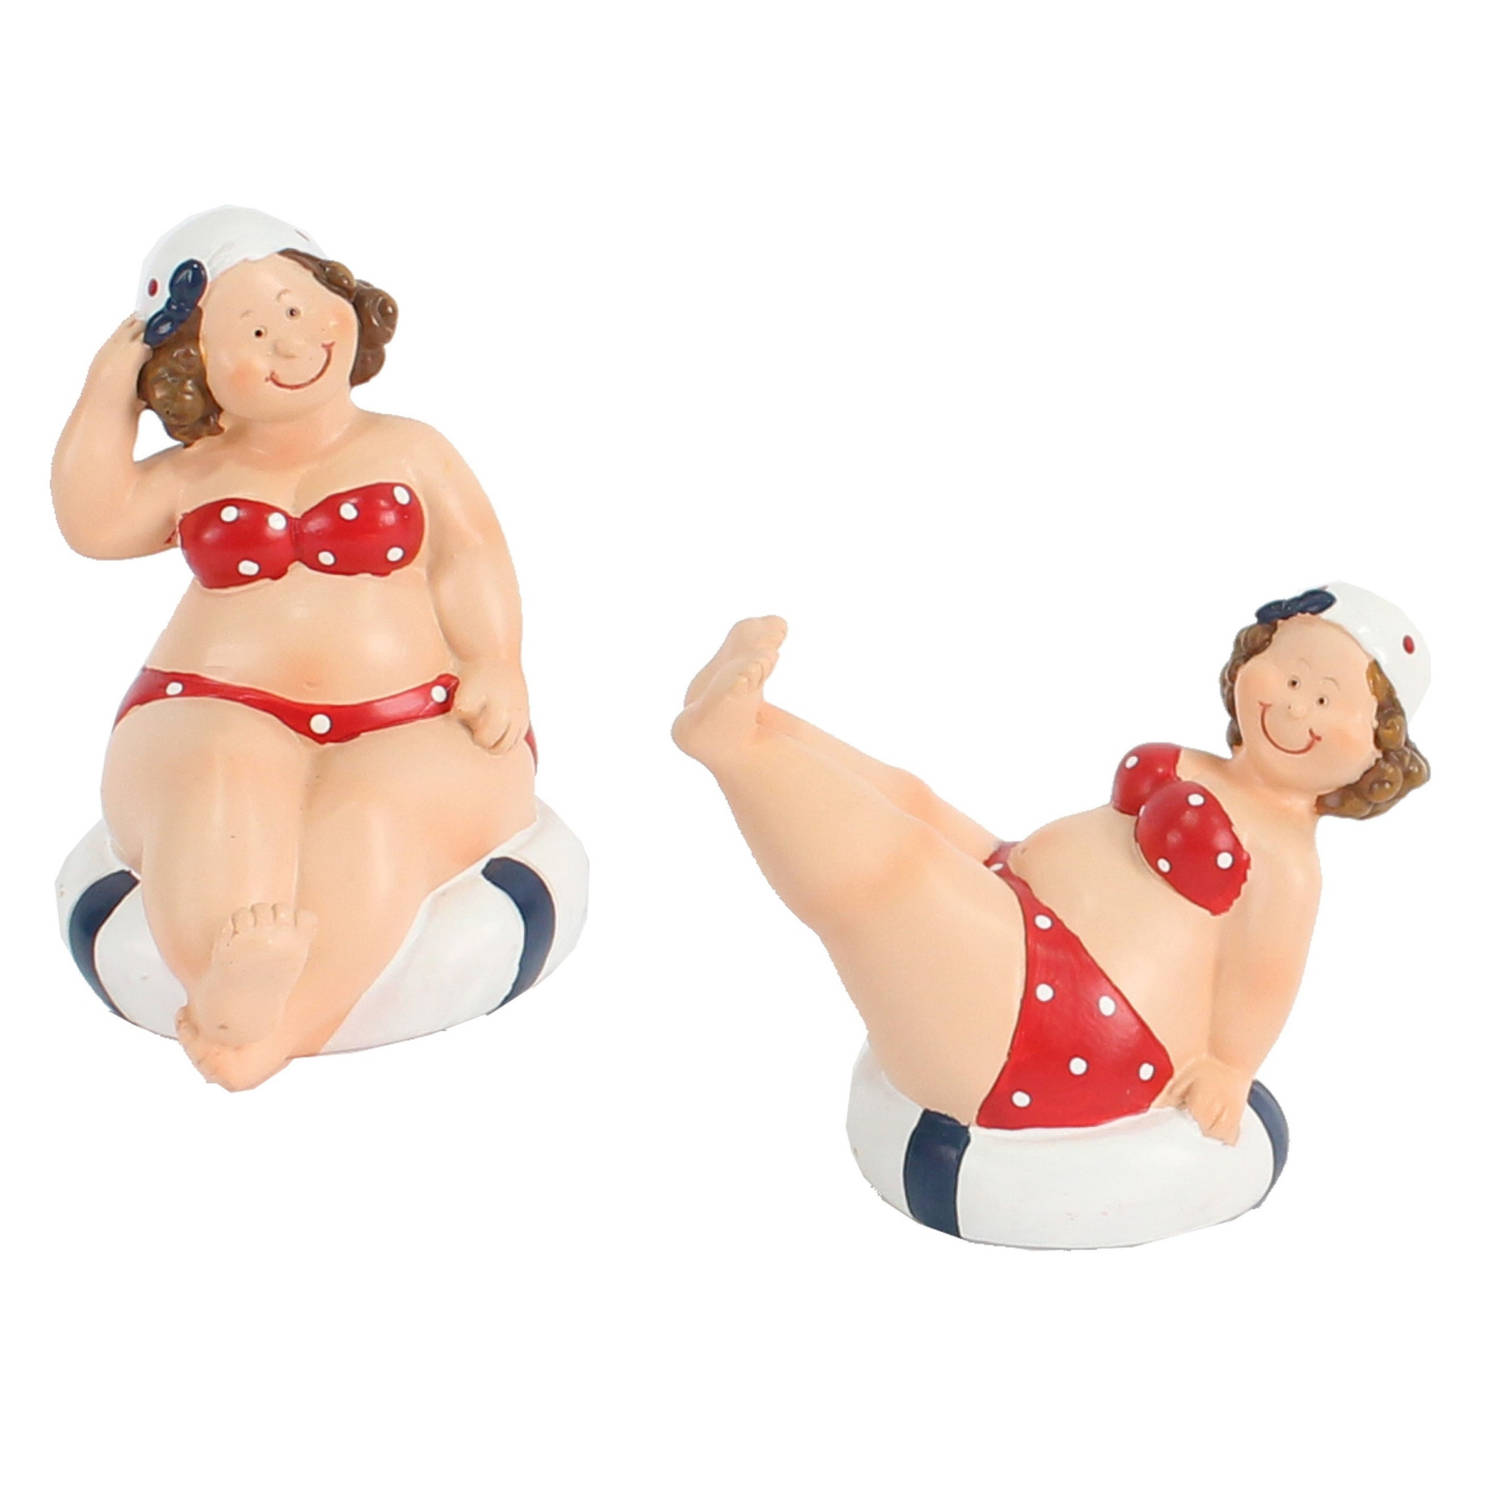 Woonkamer decoratie beeldjes set van 2 dikke dames rood badpak 10 cm Beeldjes